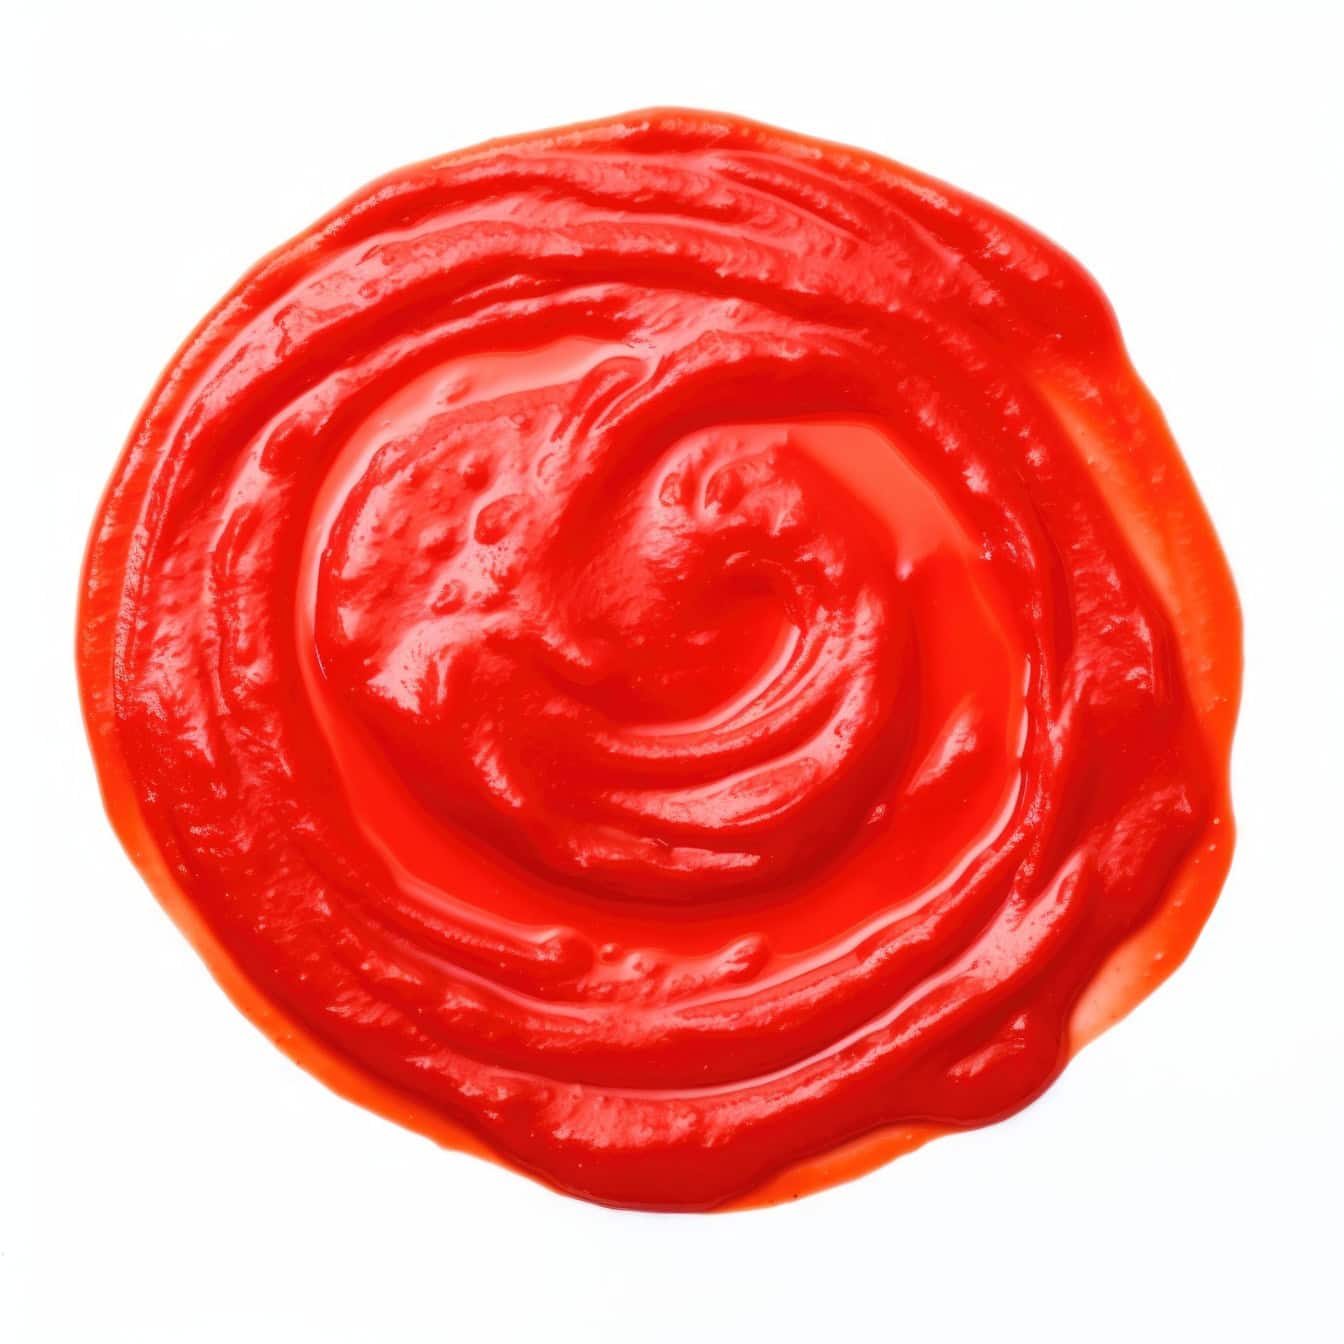 Czerwone kółko sosu z ketchupu lub koncentratu pomidorowego na białym tle